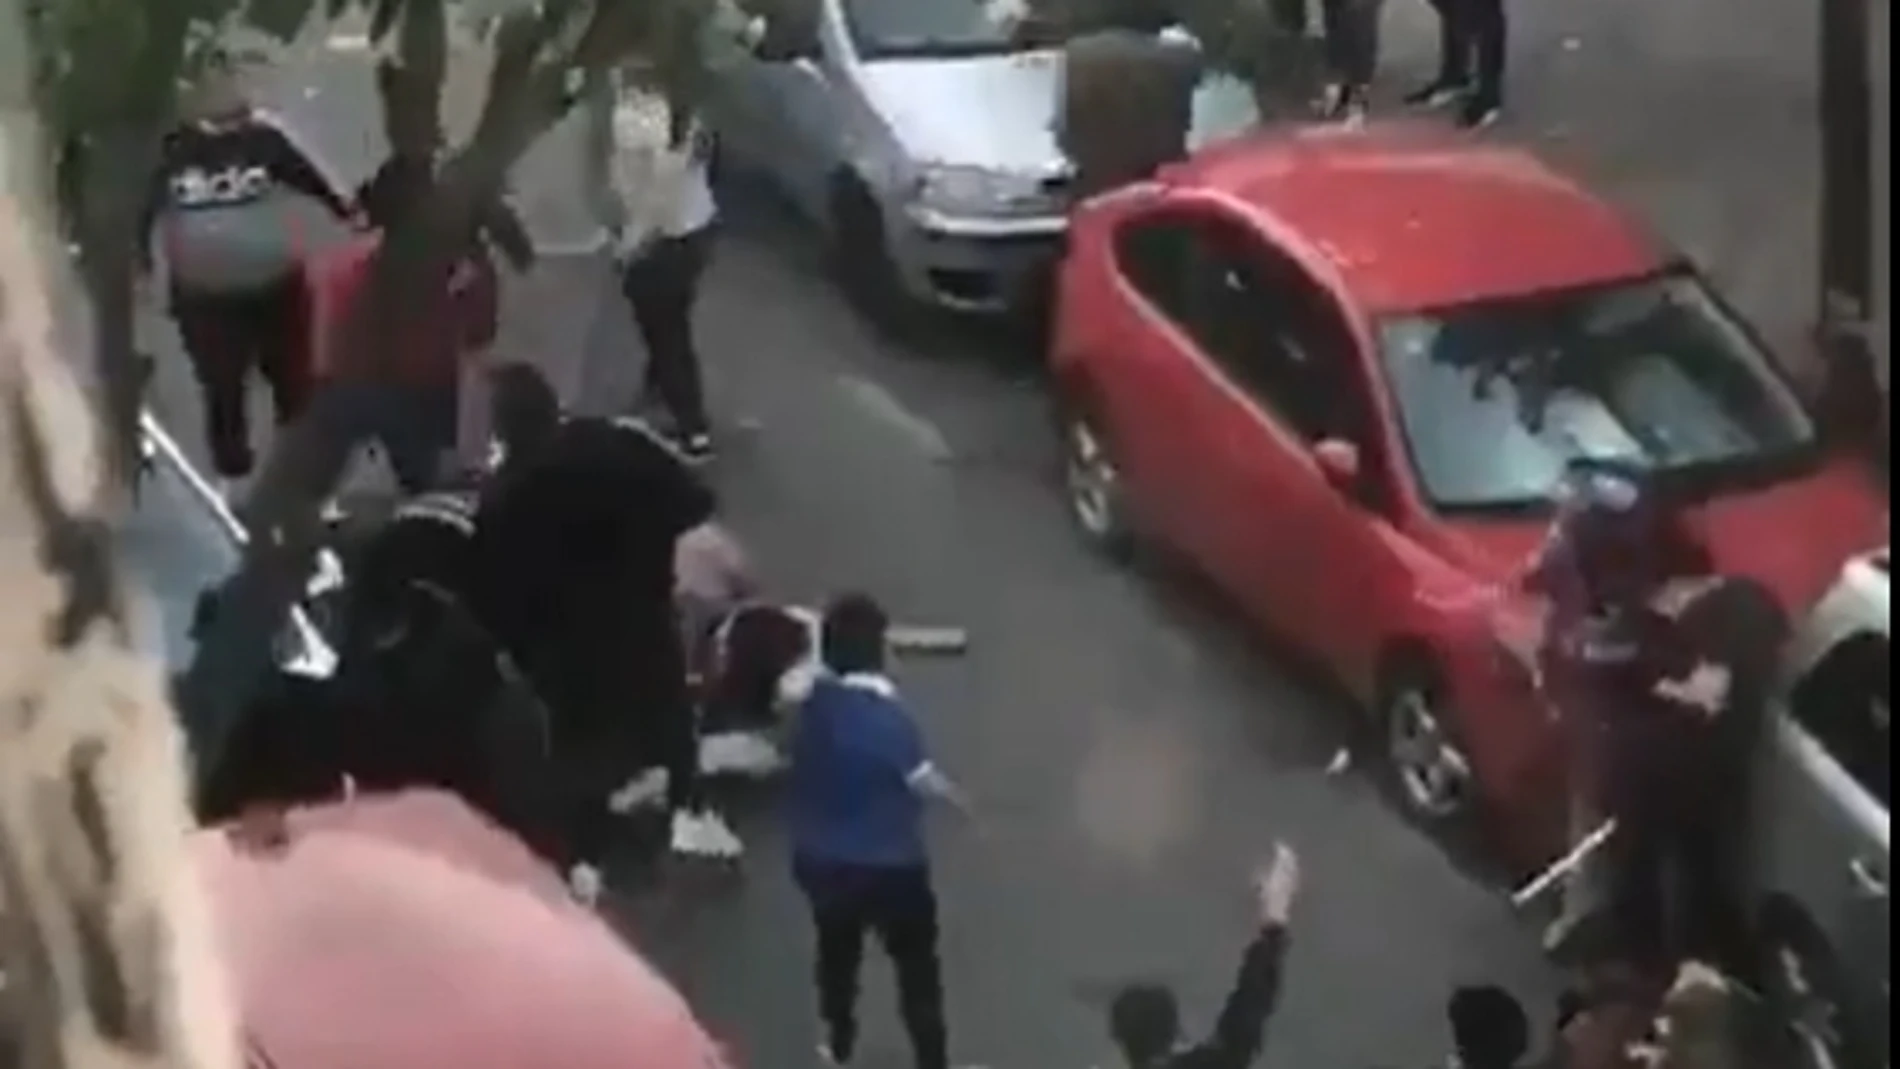 Captura de la pelea en Sevilla